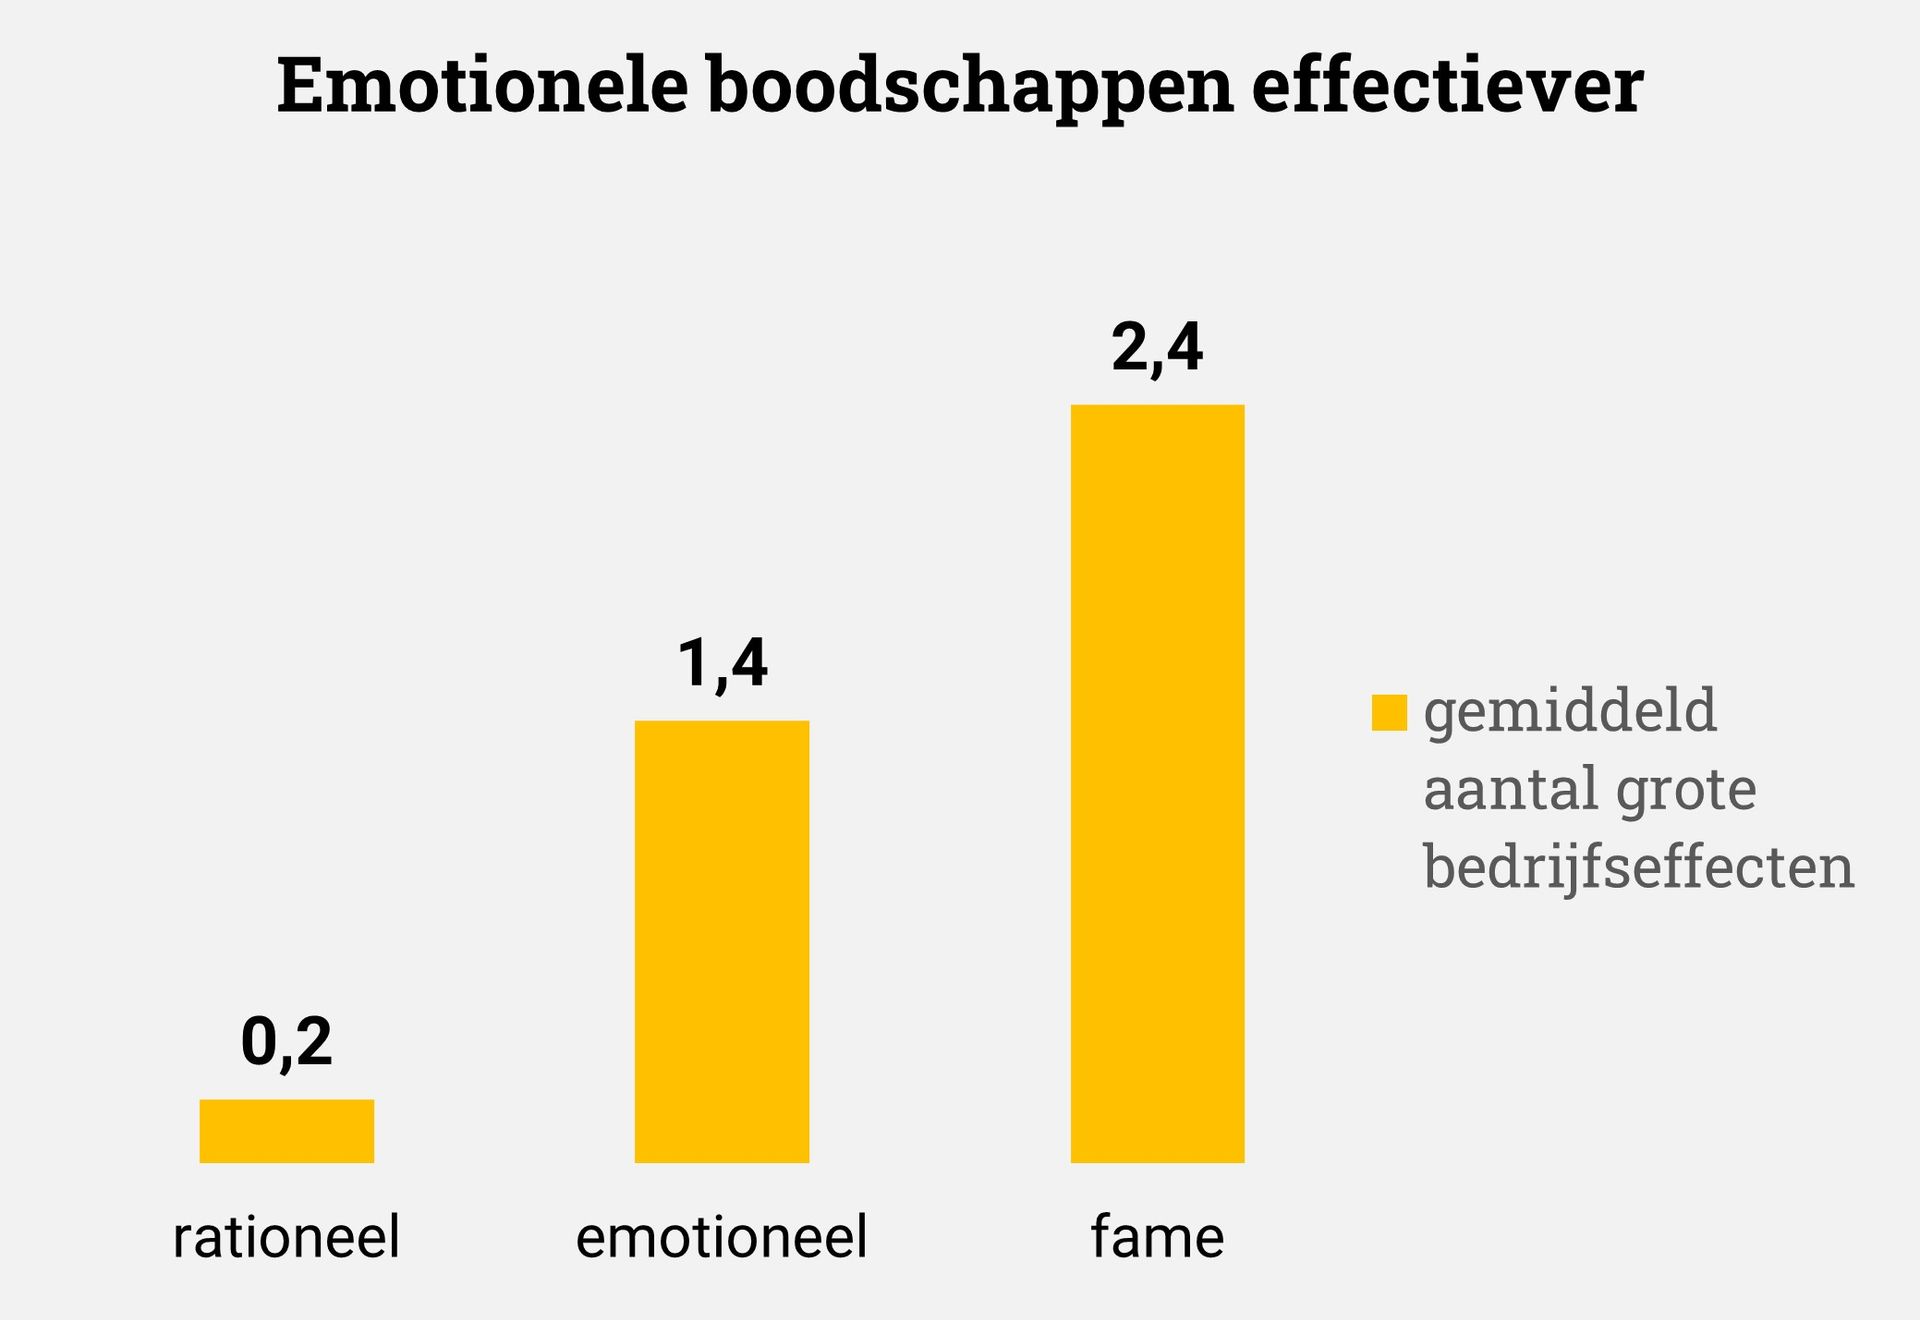 Emotionele campagnes effectiever dan rationele informatieve voor btb business to business